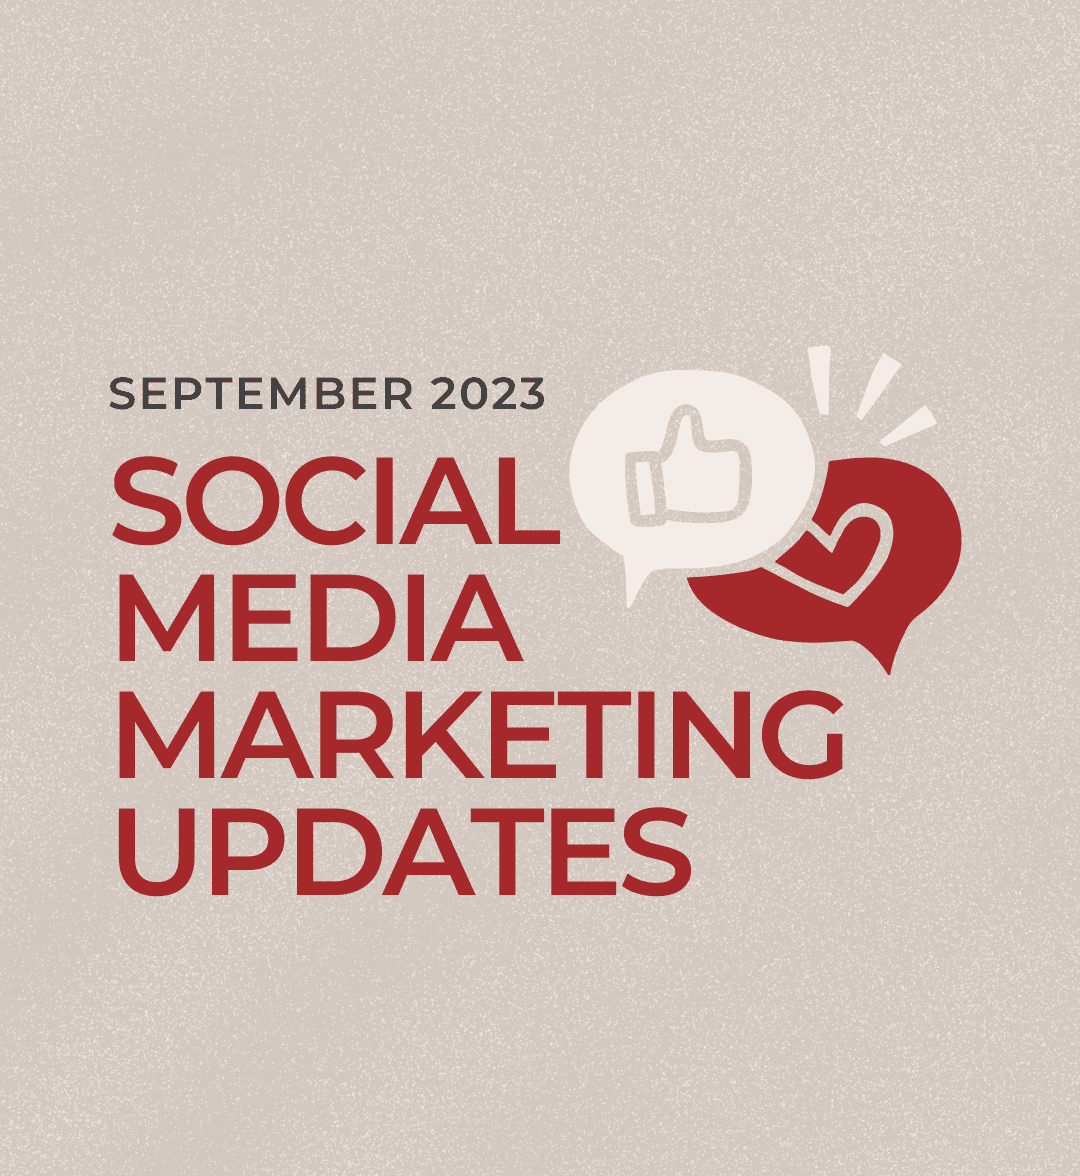 September 2023 digital marketing and social media updates